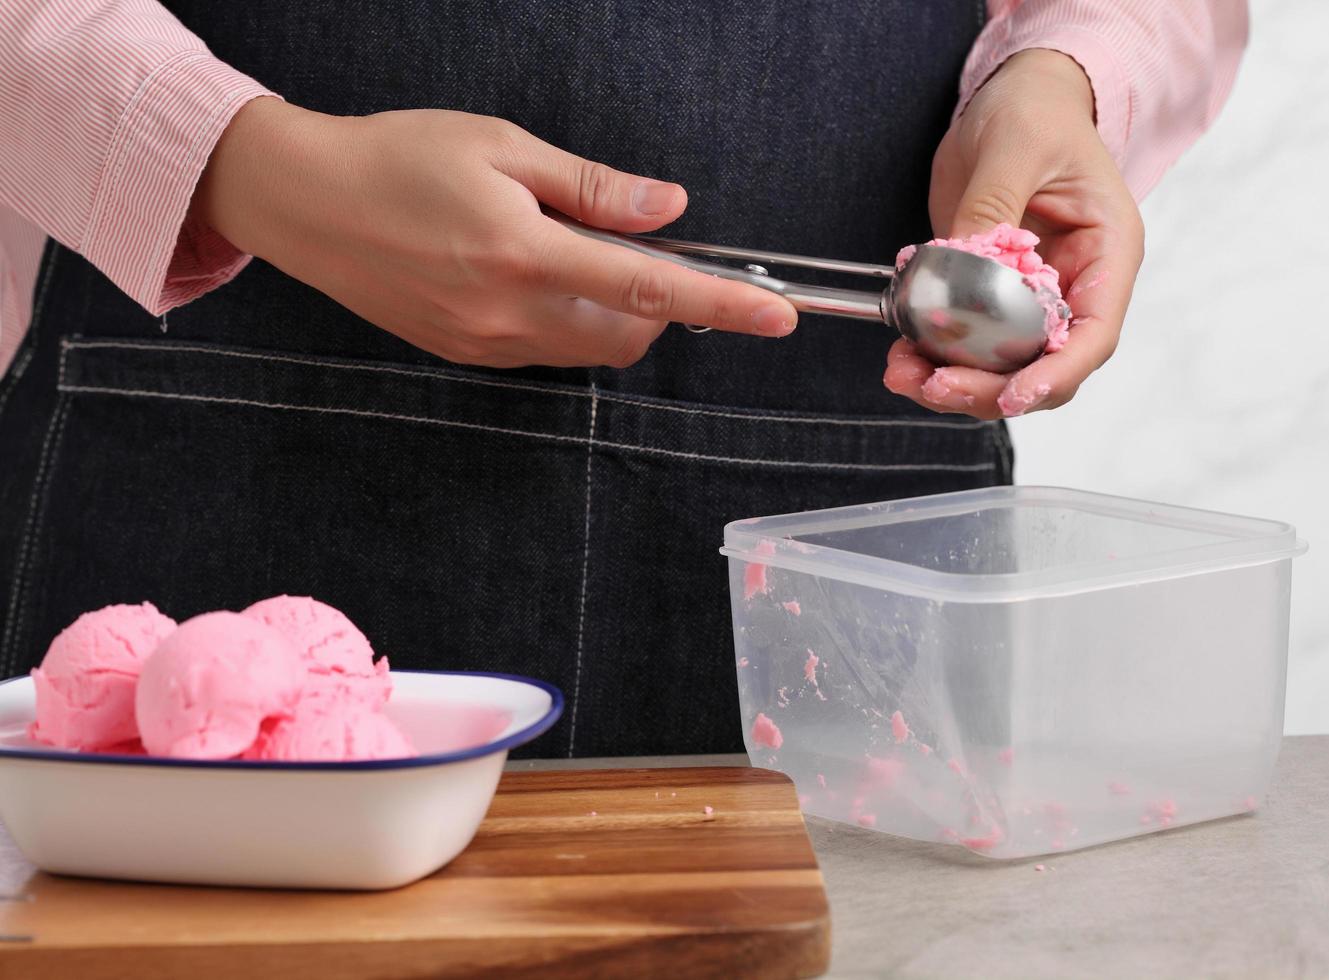 Food-Stylist verwendet Scooper, um gefälschtes Eis zu dekorieren foto